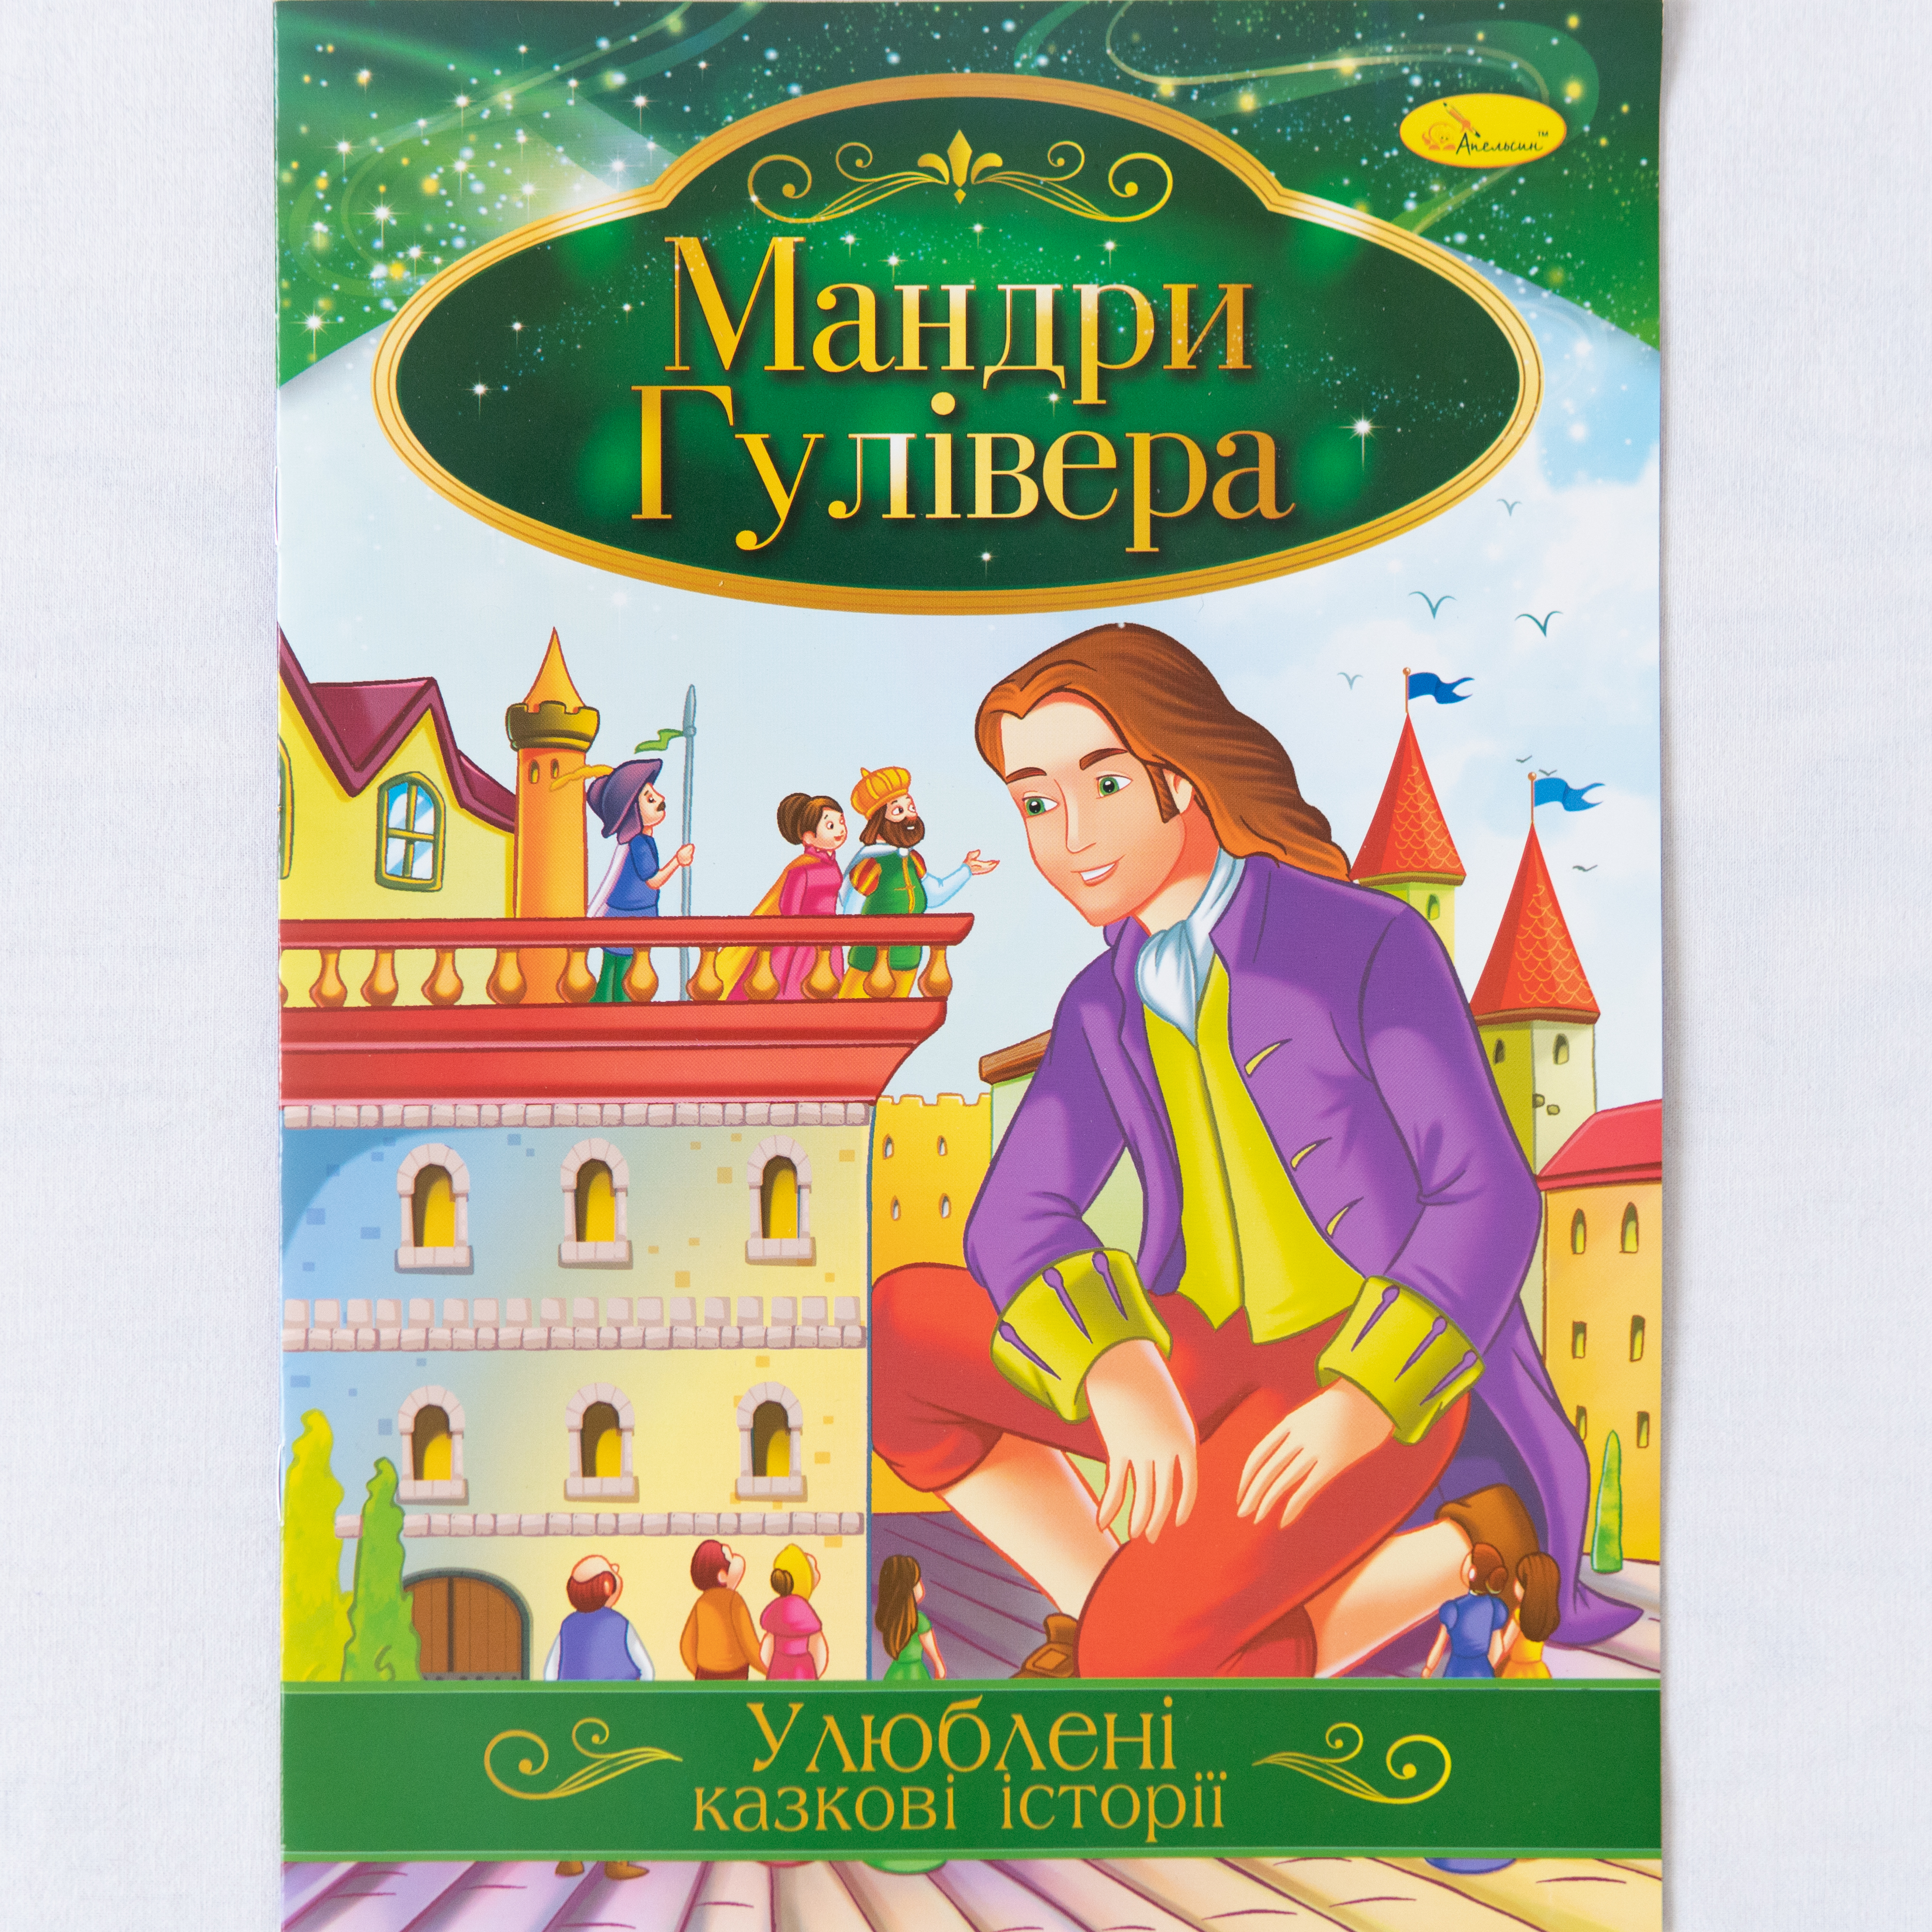 Beliebte Märchengeschichten Gullivers Reisen ist ein Kinderbuch auf Ukrainisch/Beliebte Märchengeschichten Gullivers Reisen ist ein Kinderbuch auf Ukrainisch